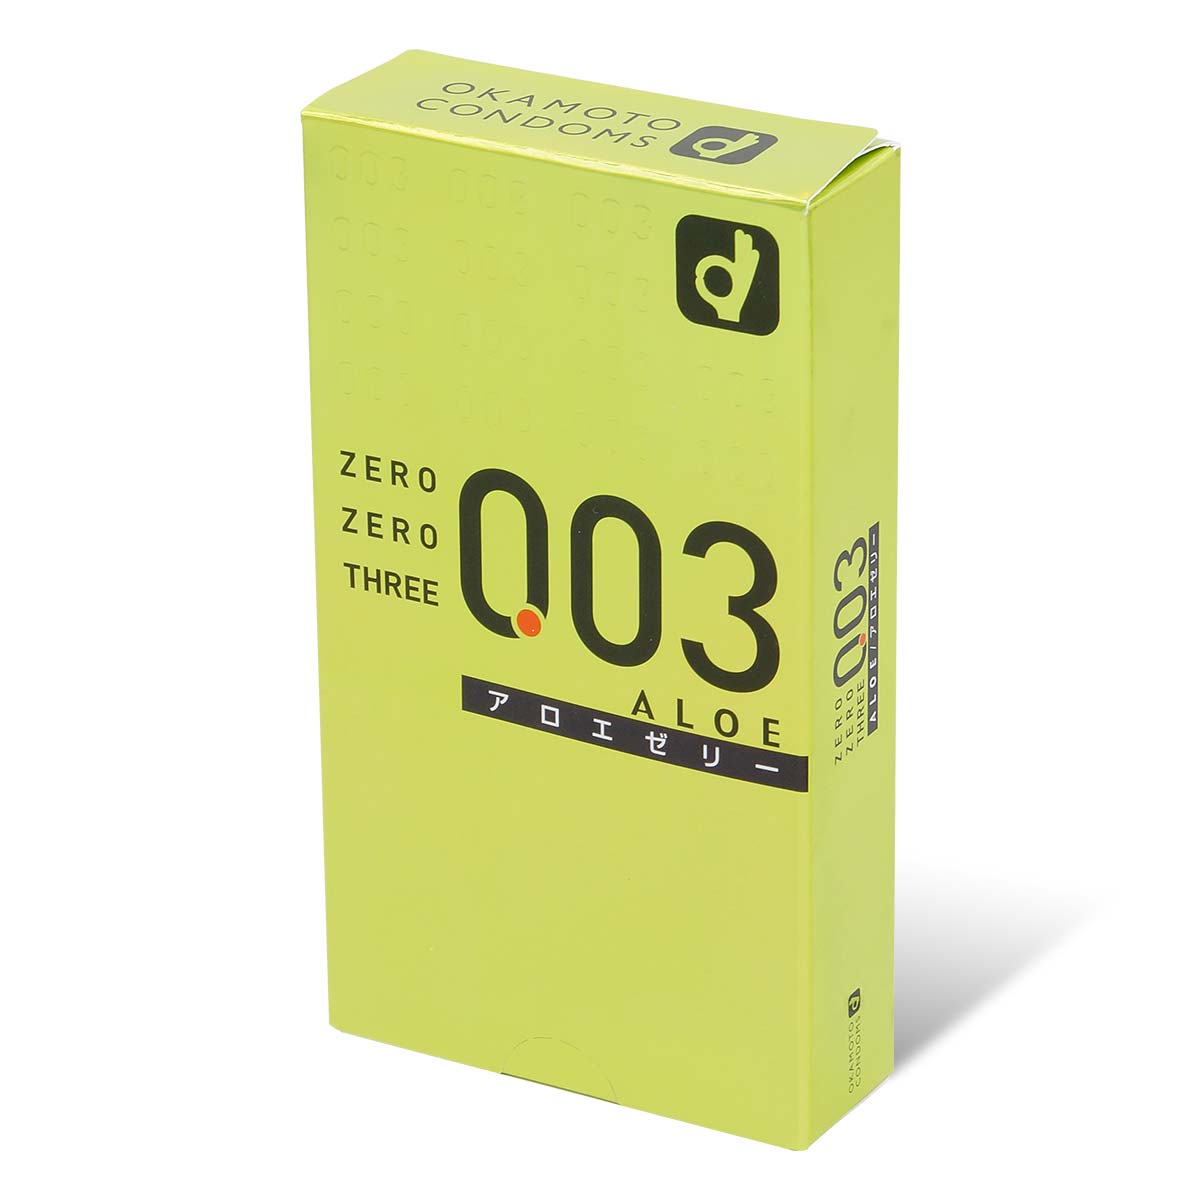 Zero Zero Three 0.03 Aloe (Japan Edition) 10's Pack Latex Condom-thumb